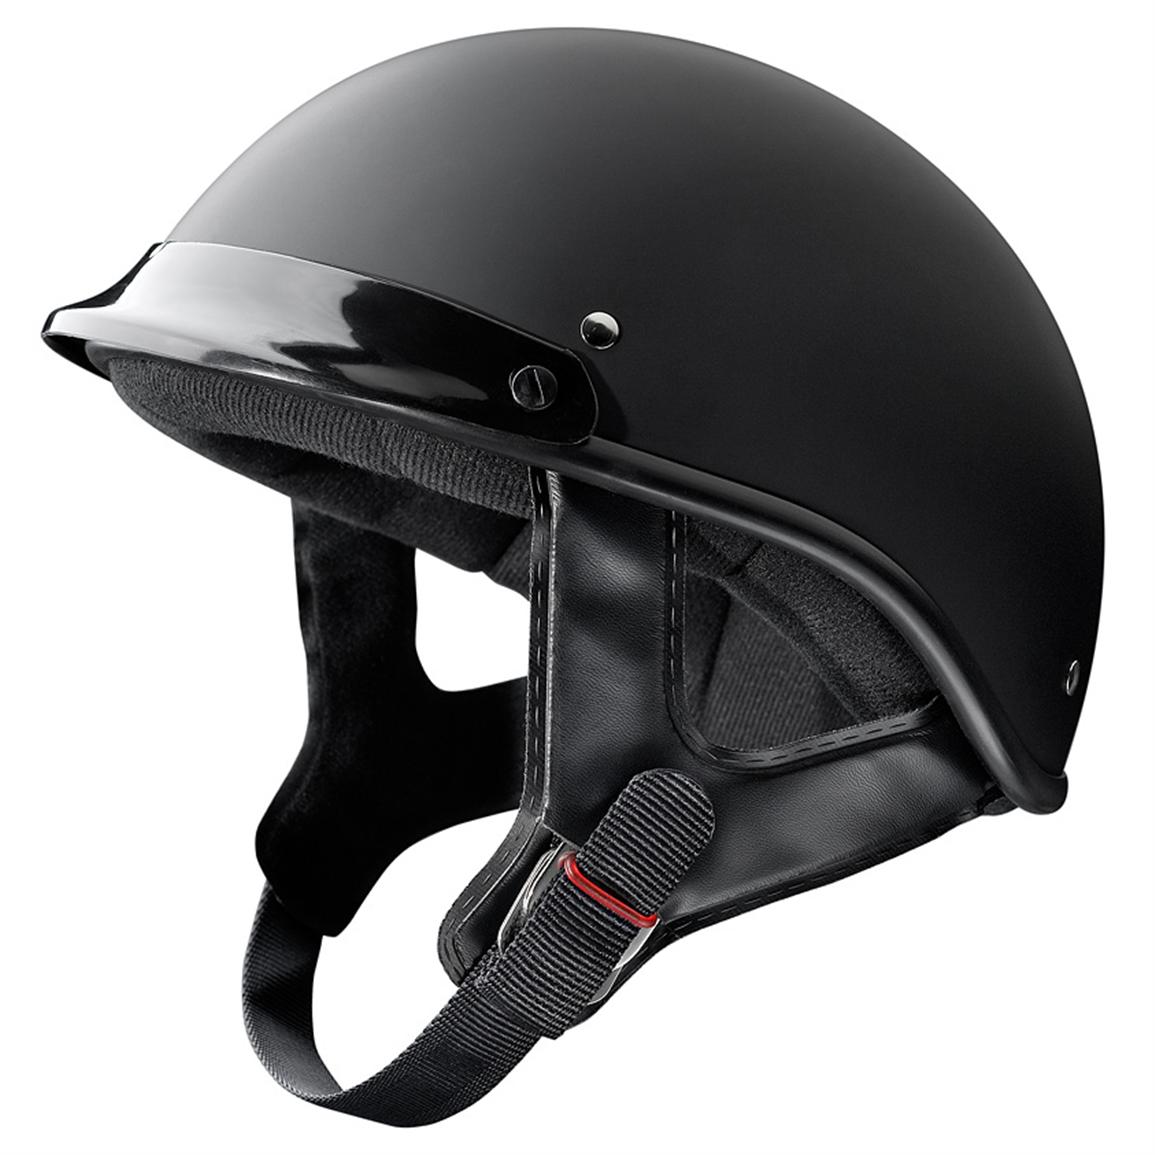 Raider® Trooper Motorcycle Helmet - 216794, Helmets & Goggles at